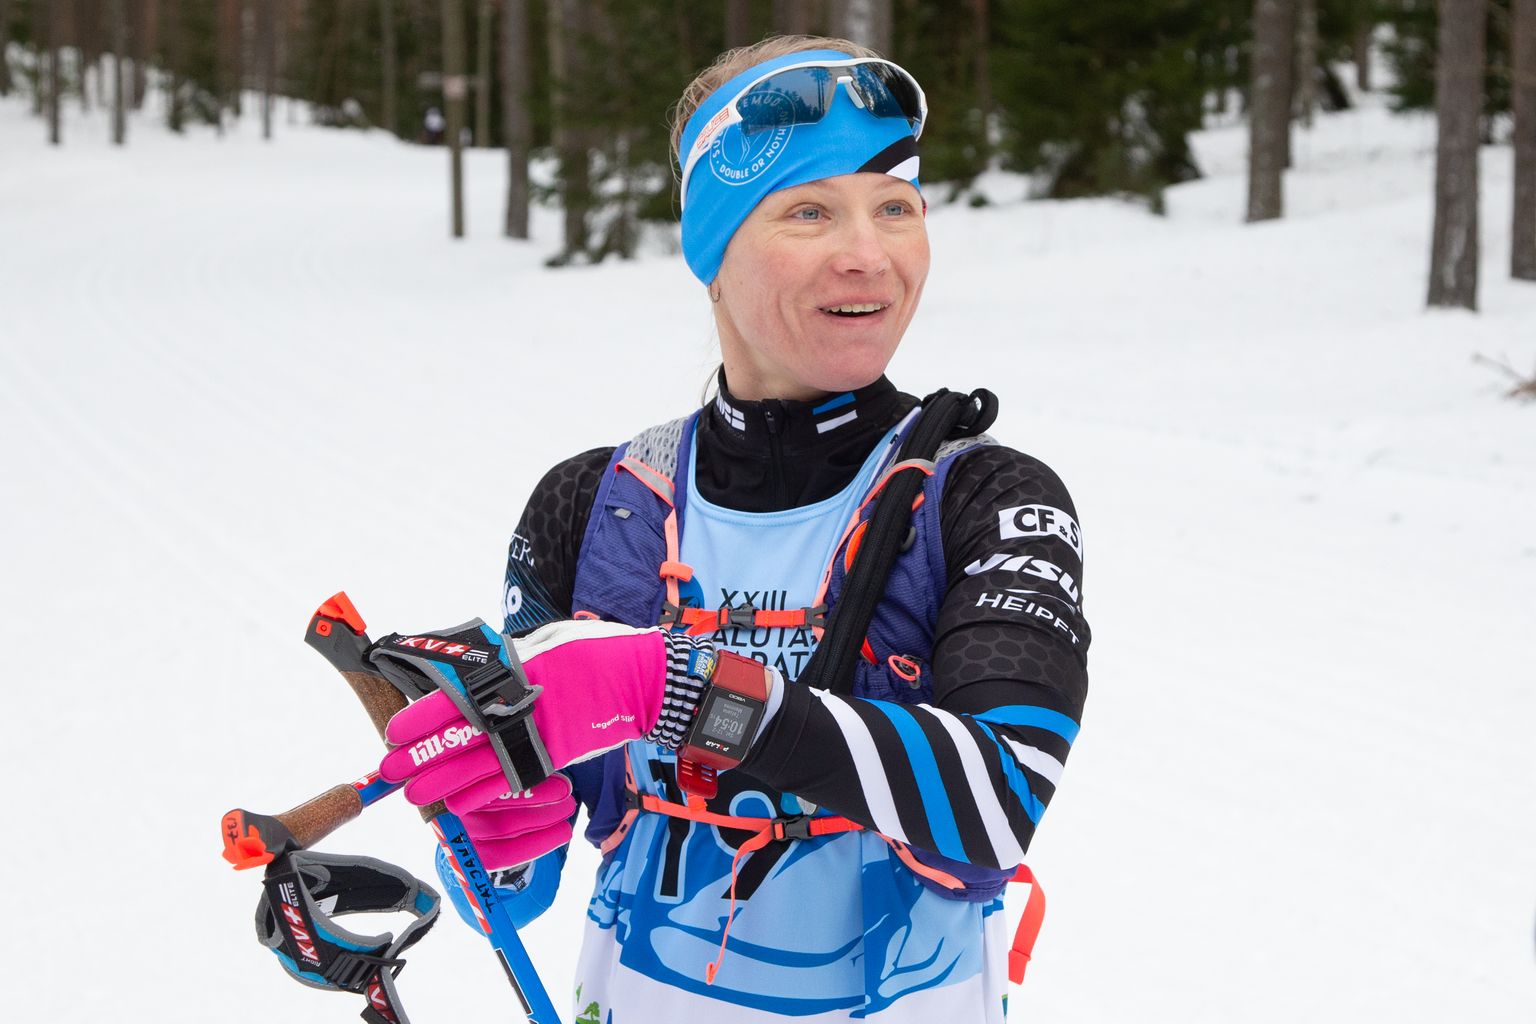 43aastane Tatjana Mannima jättis Eesti meistrivõistlustel temast paarkümmend aastat nooremad konkurendid kindlalt selja taha.